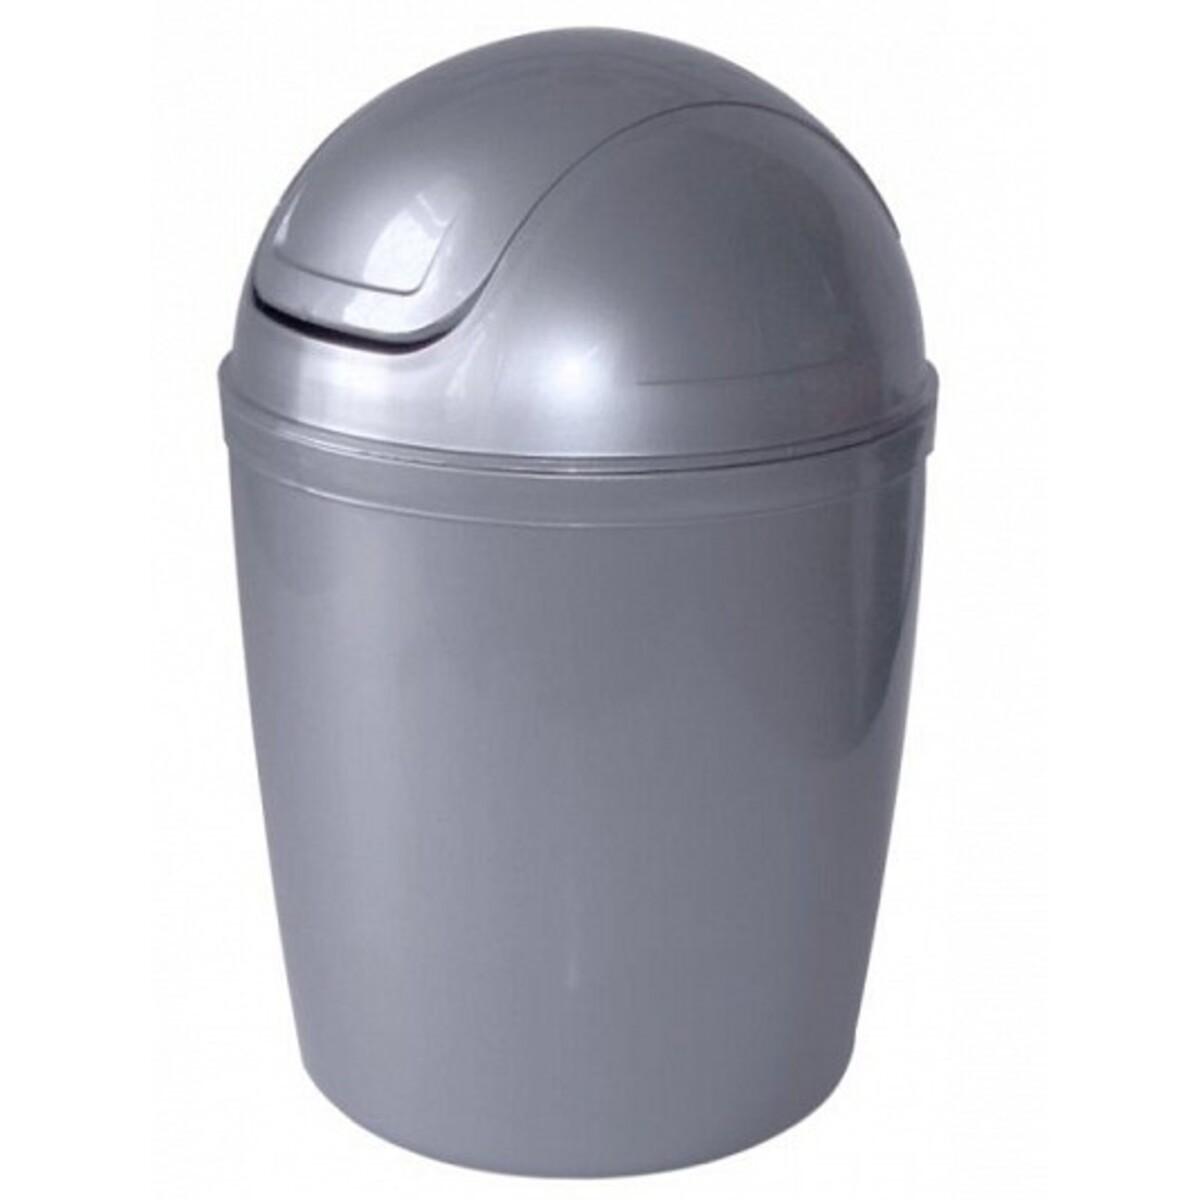 Mini-poubelle - 1.3 L - Différents modèles - Gris